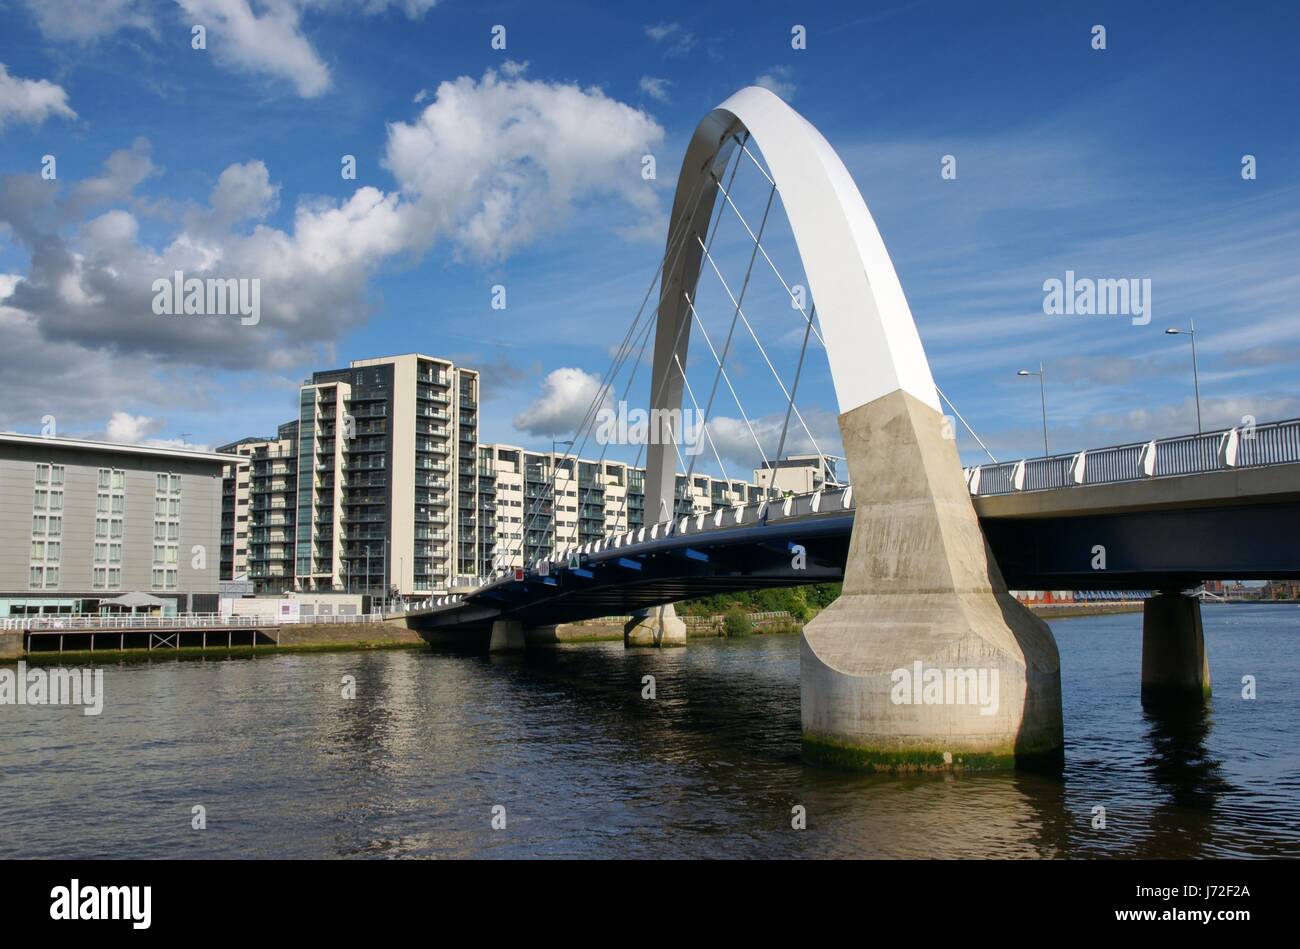 Ponte ad arco archi scozia glasgow firmamento cielo acqua di fiume casa blu home Foto Stock